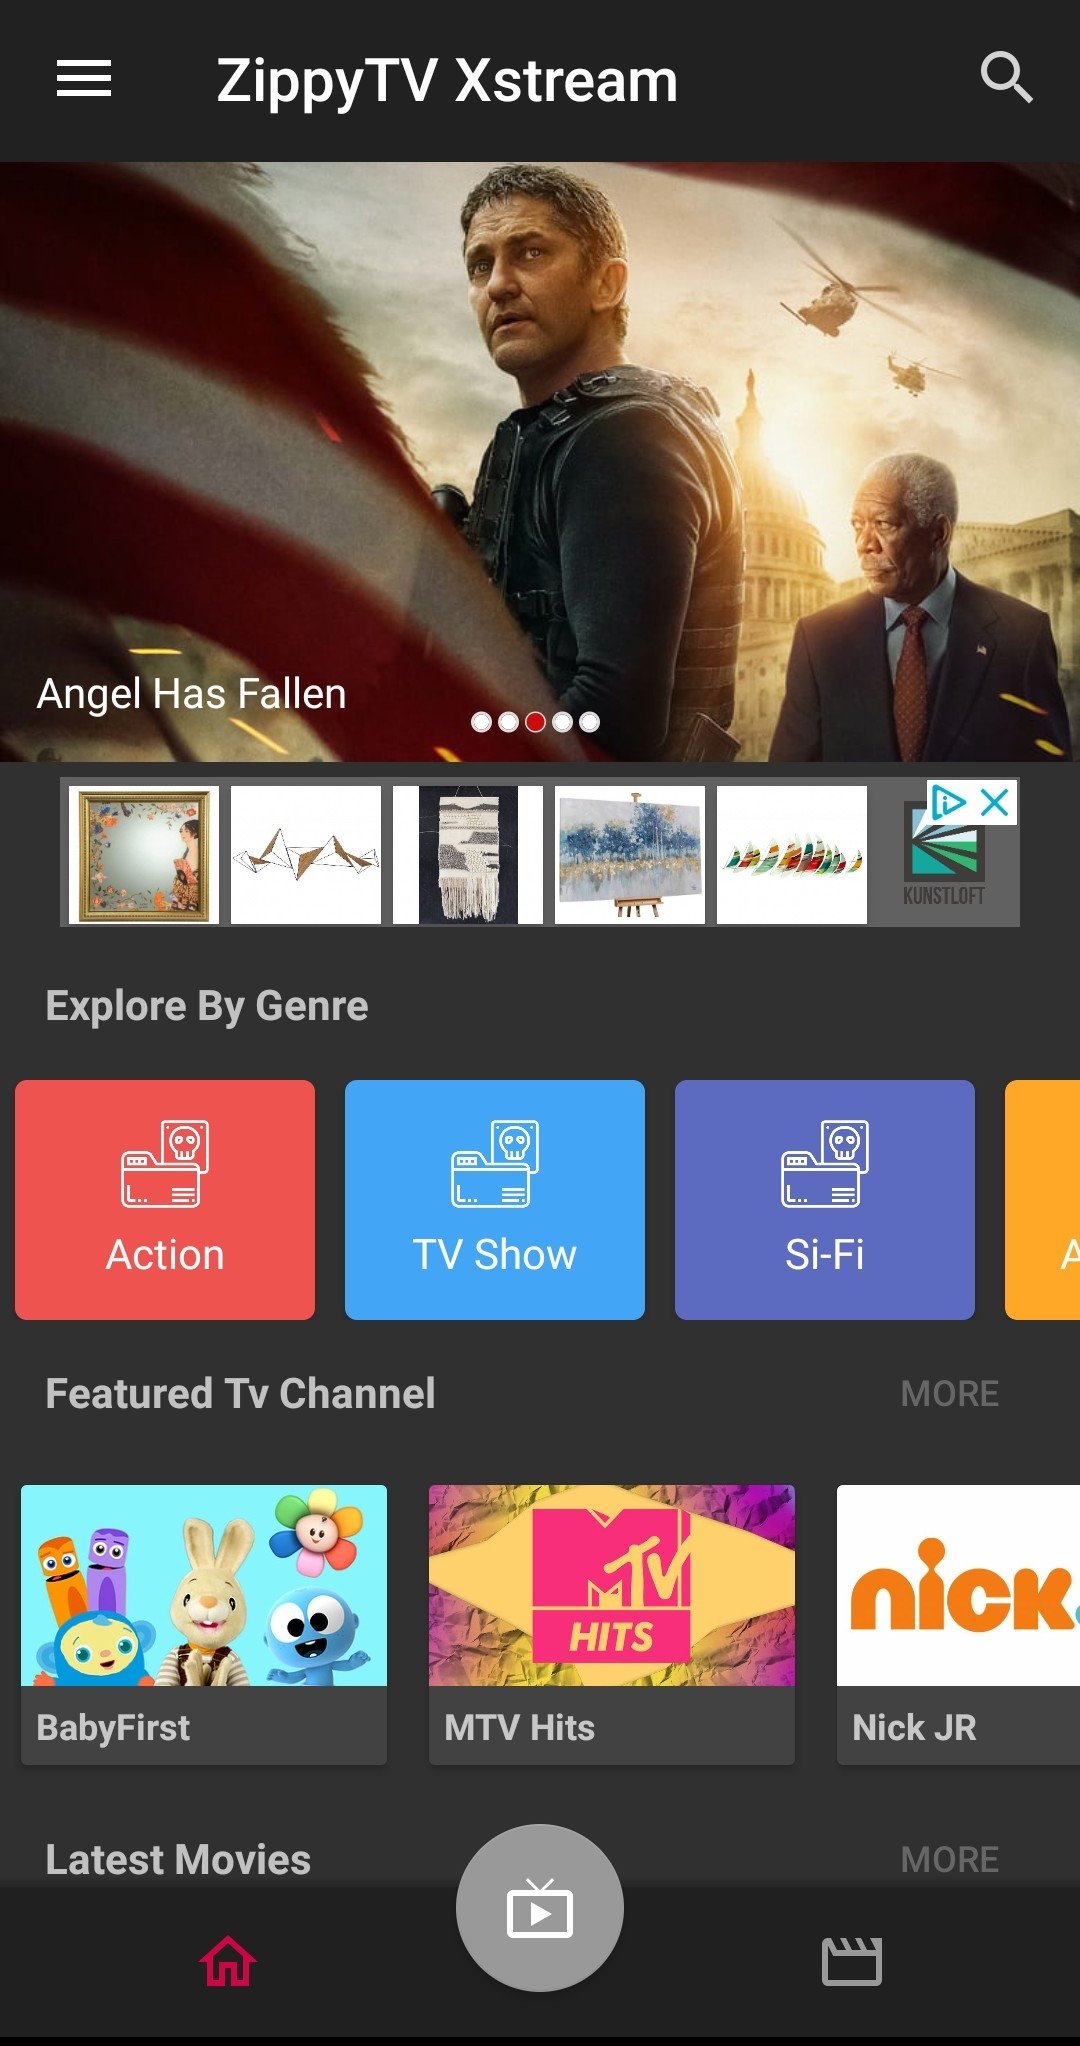 Baixar TV Online Gratis 4.0 Android - Download APK Grátis